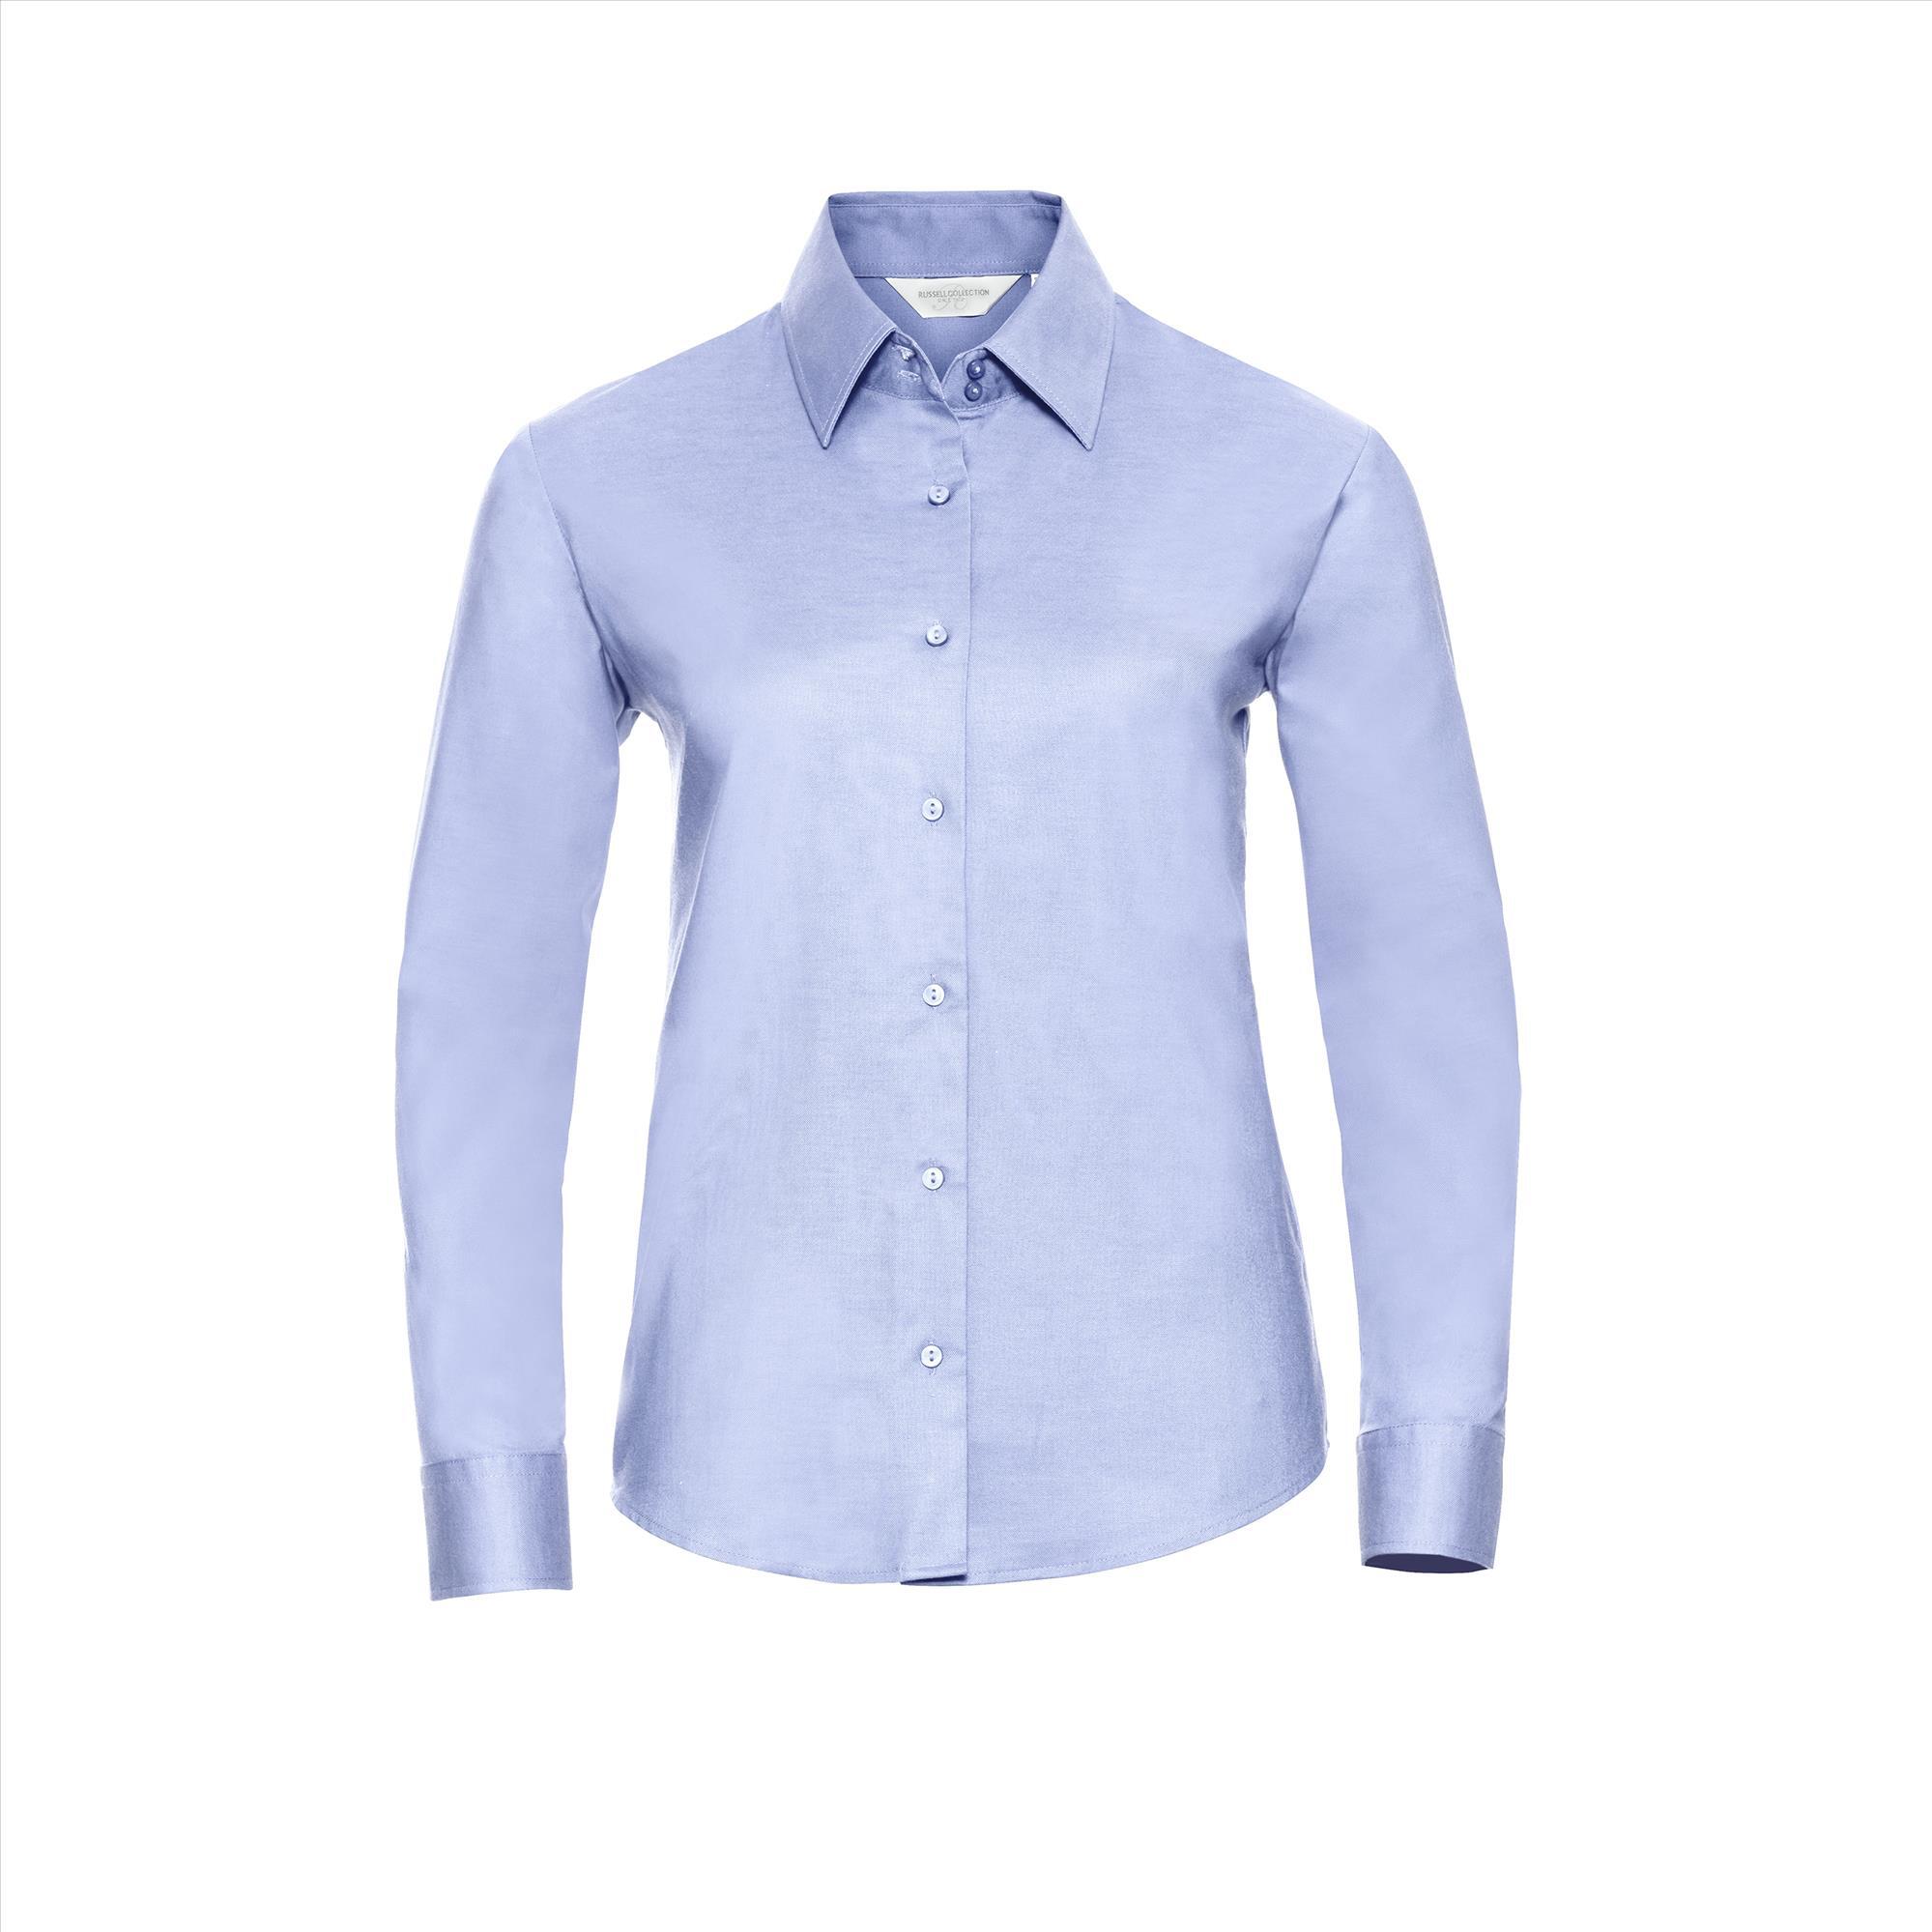 Getailleerde dames blouse oxford blue te personaliseren bedrijfslogo